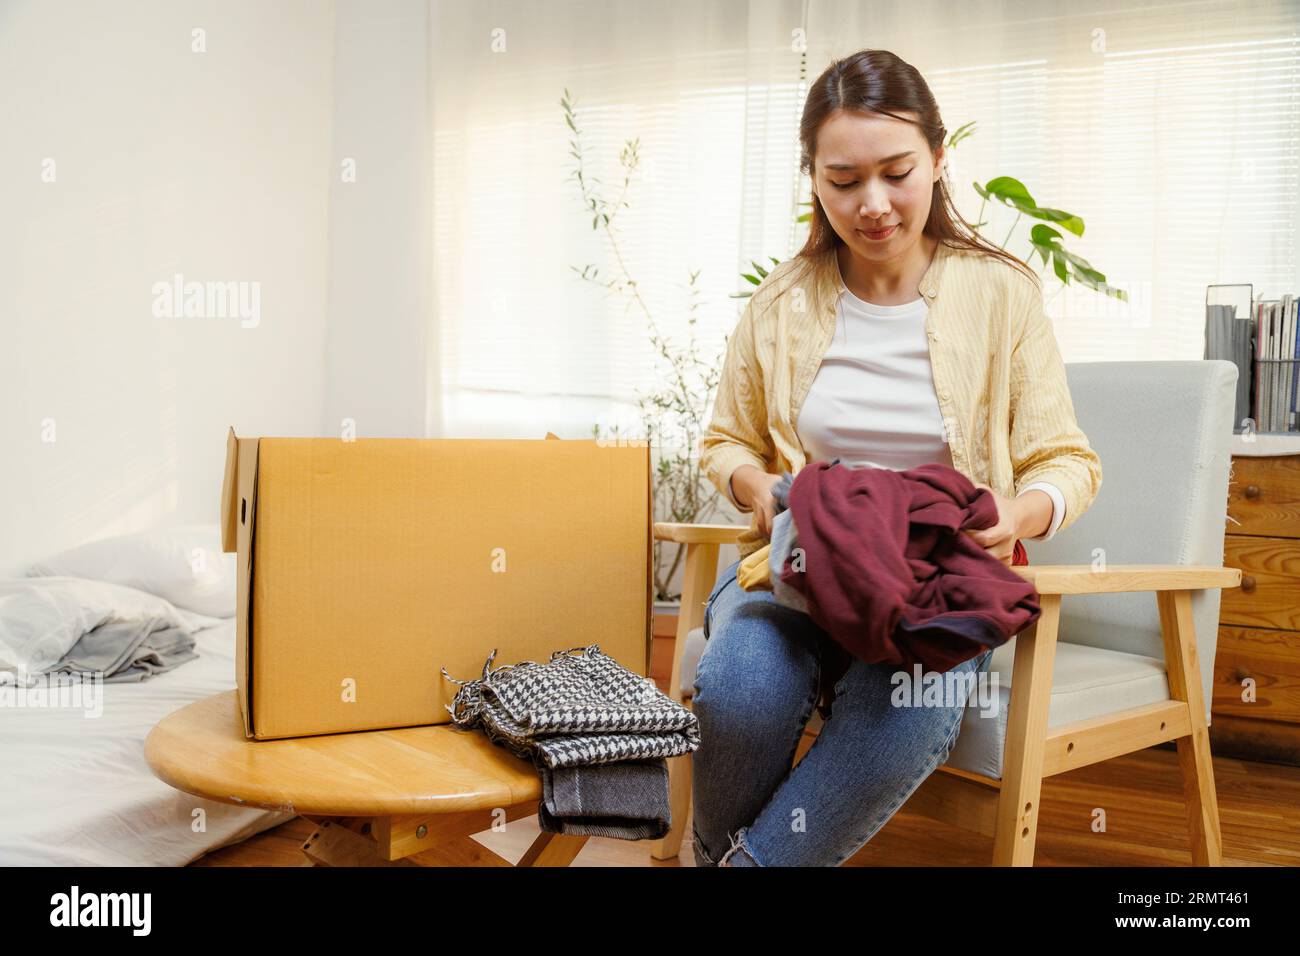 Jeune femme asiatique mettant des vêtements dans une boîte en carton pour déménager dans une nouvelle maison ou un appartement. Banque D'Images